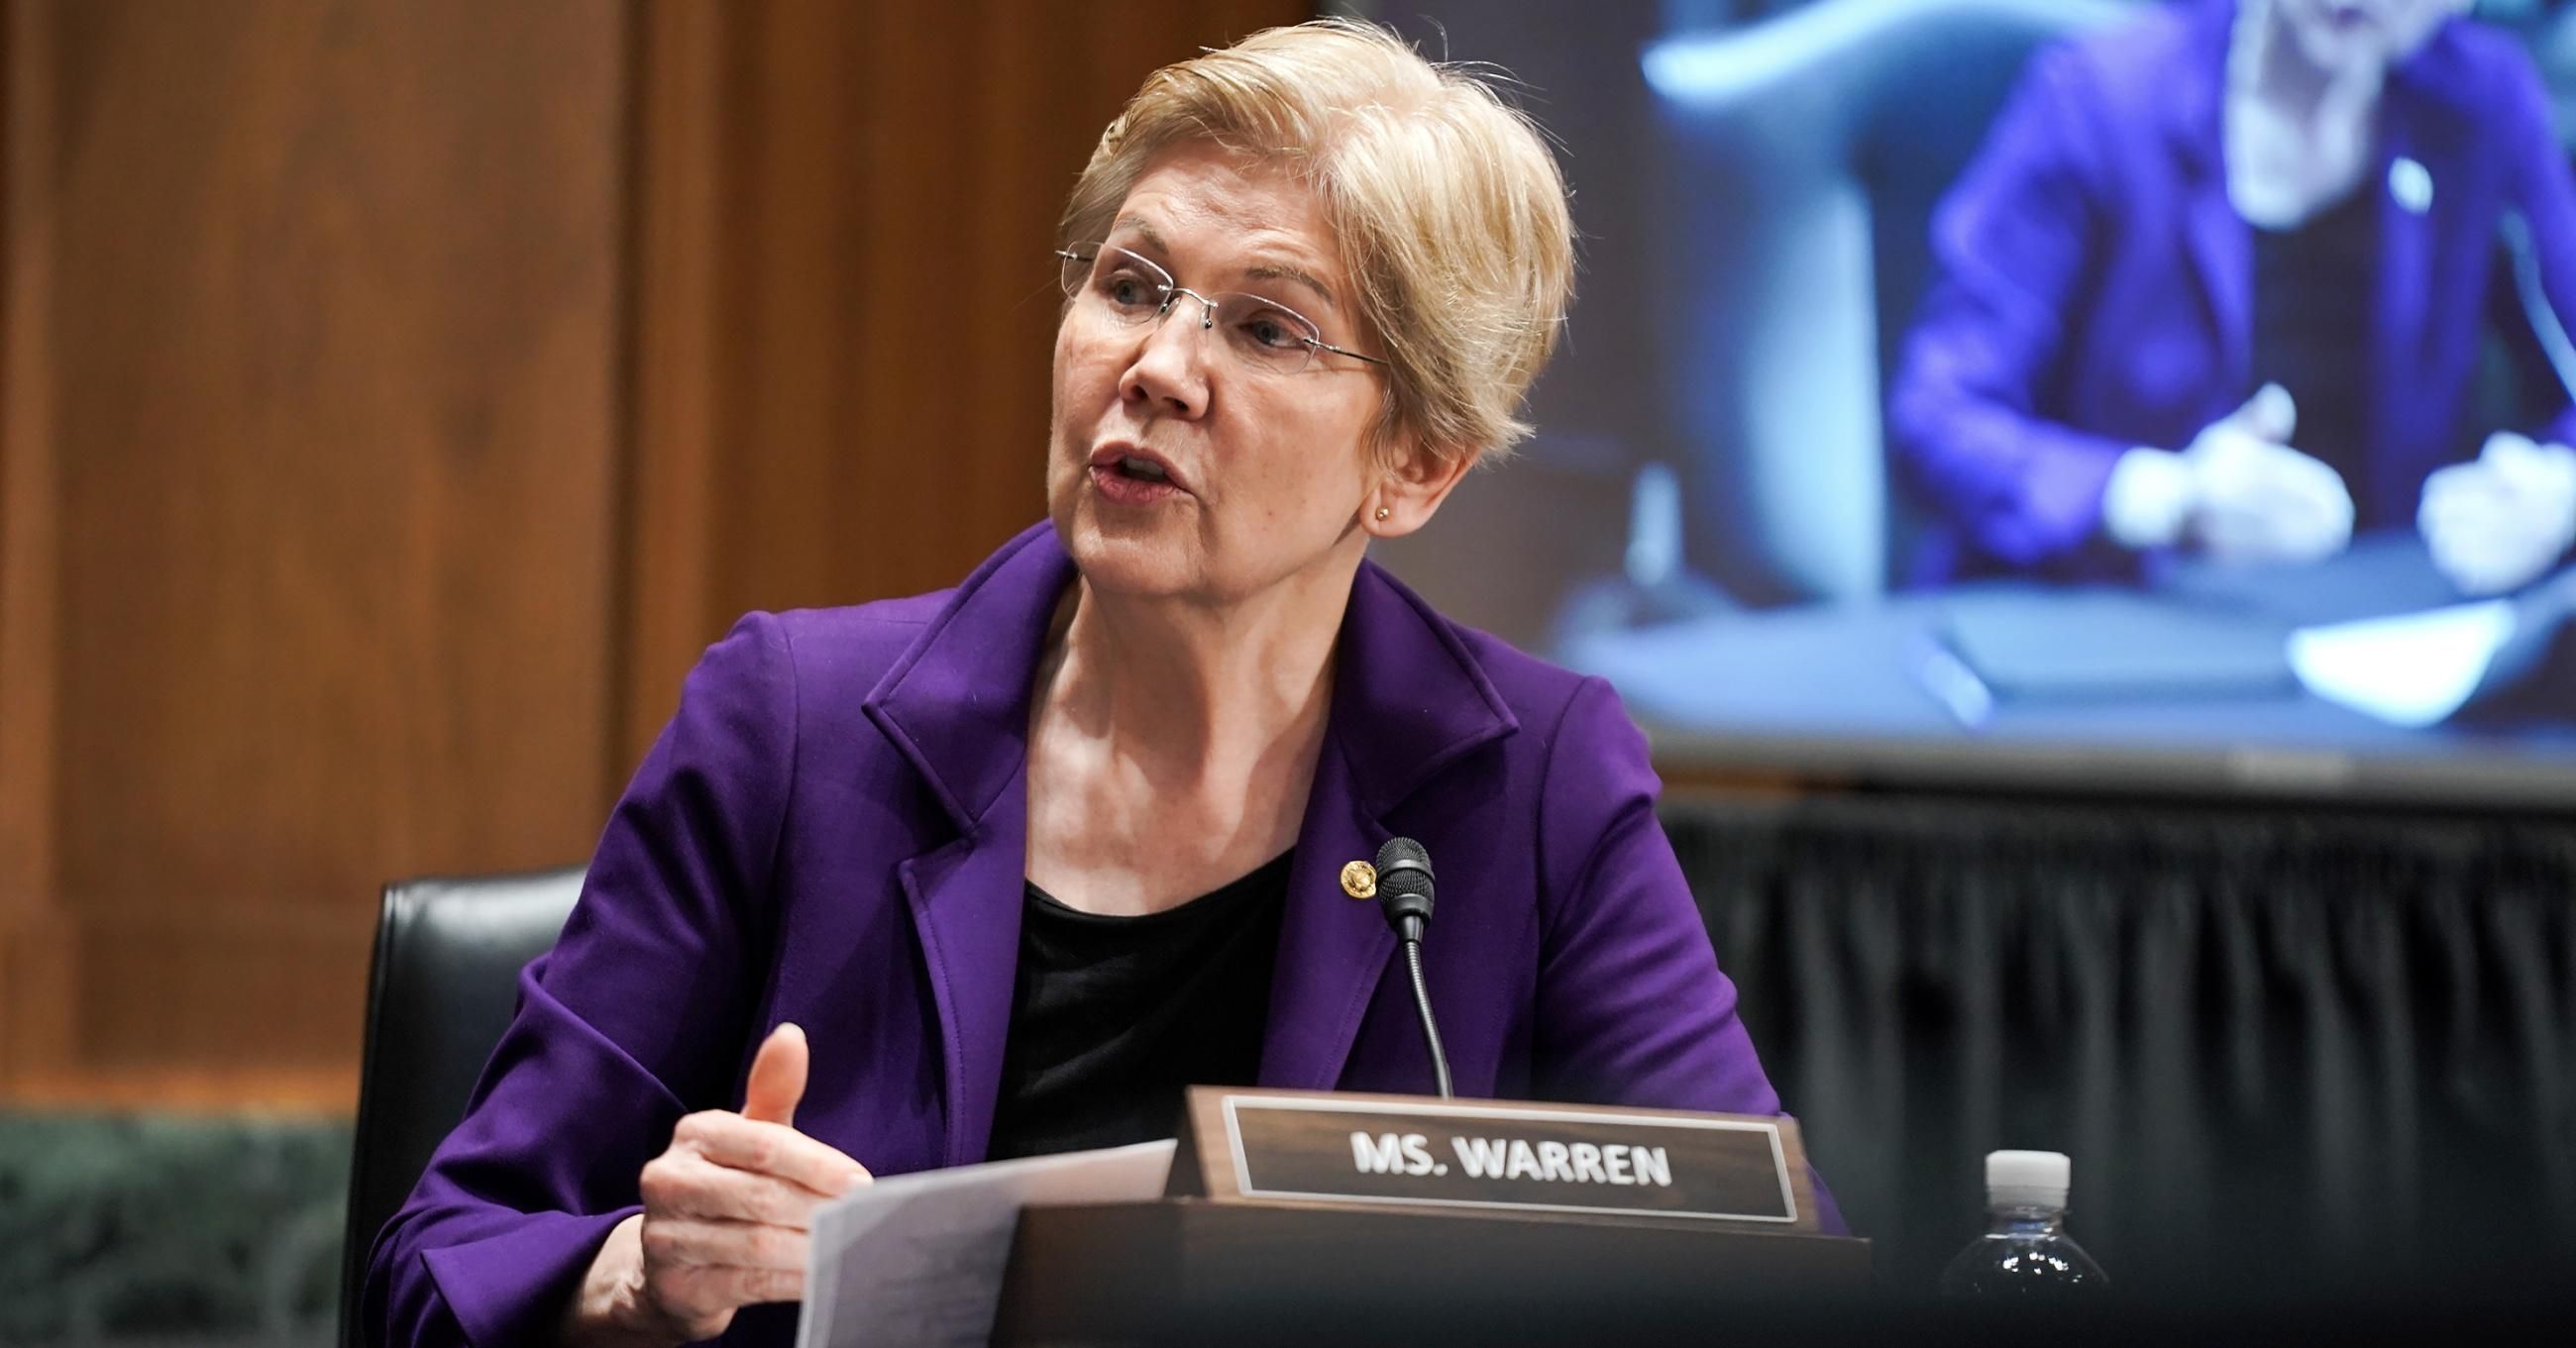 Sen. Elizabeth Warren (D-Mass.) speaks during a Senate Finance Committee hearing on February 23, 2021 in Washington, D.C.